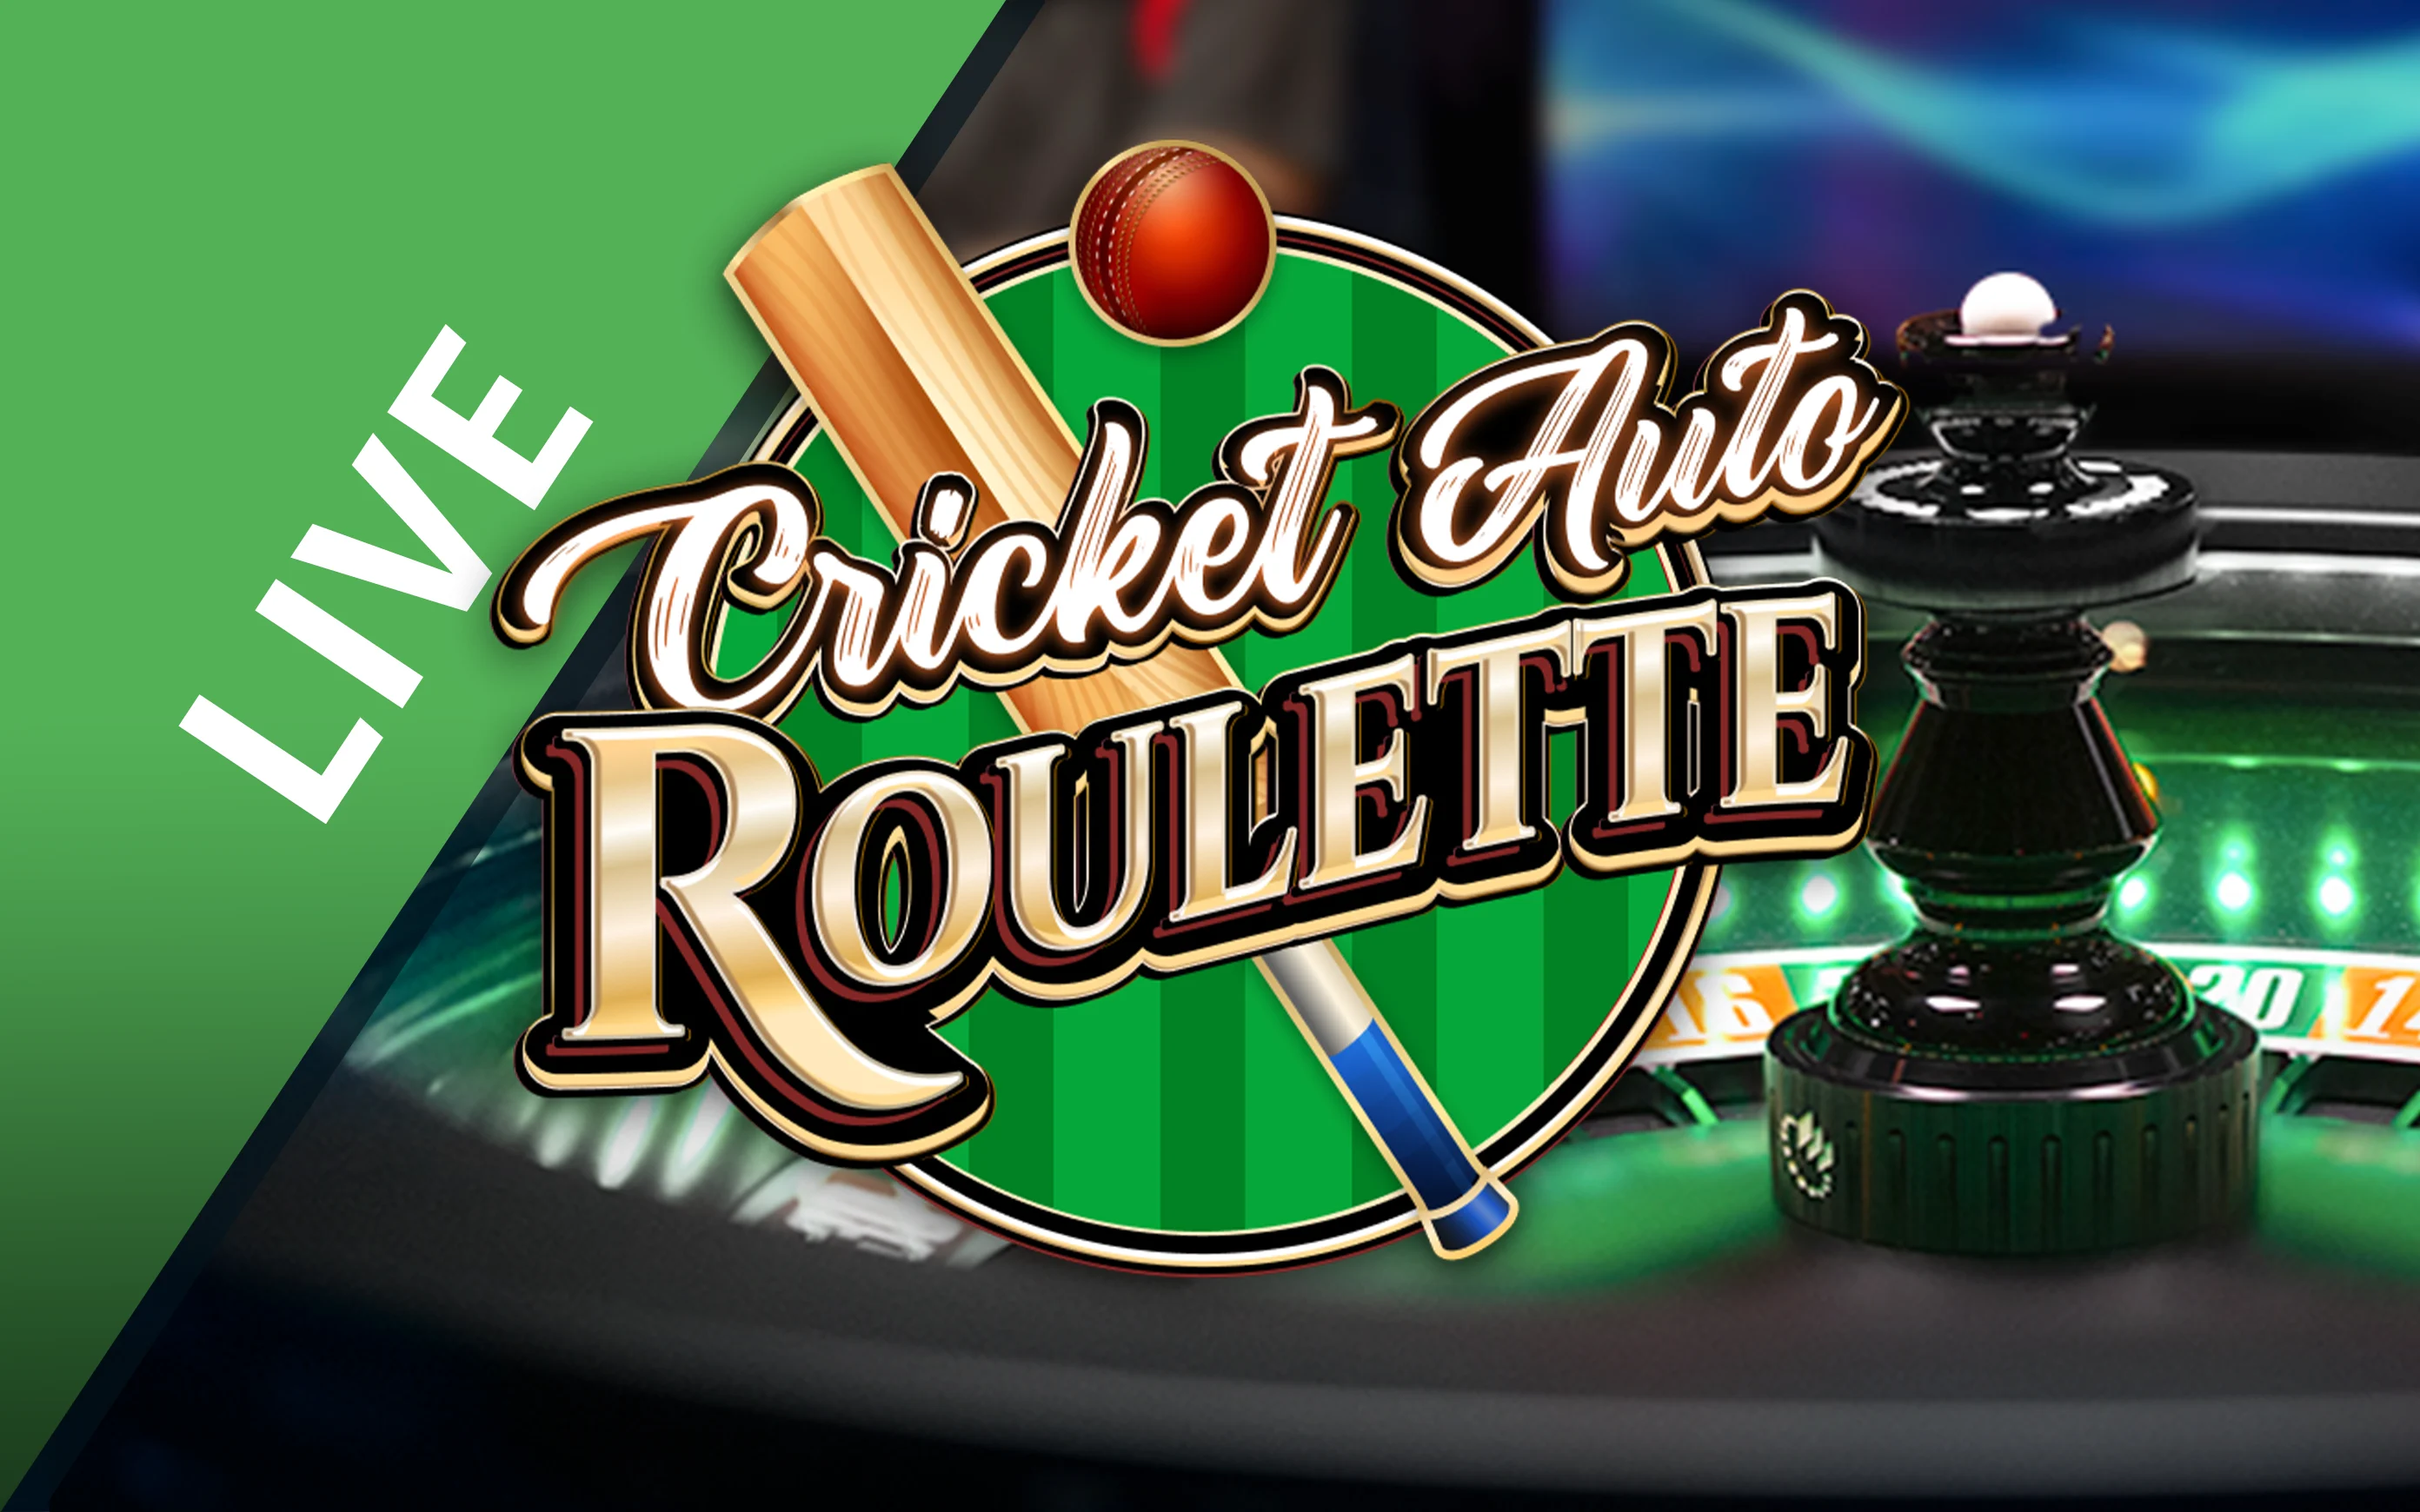 Juega a Cricket Auto Roulette en el casino en línea de Starcasino.be